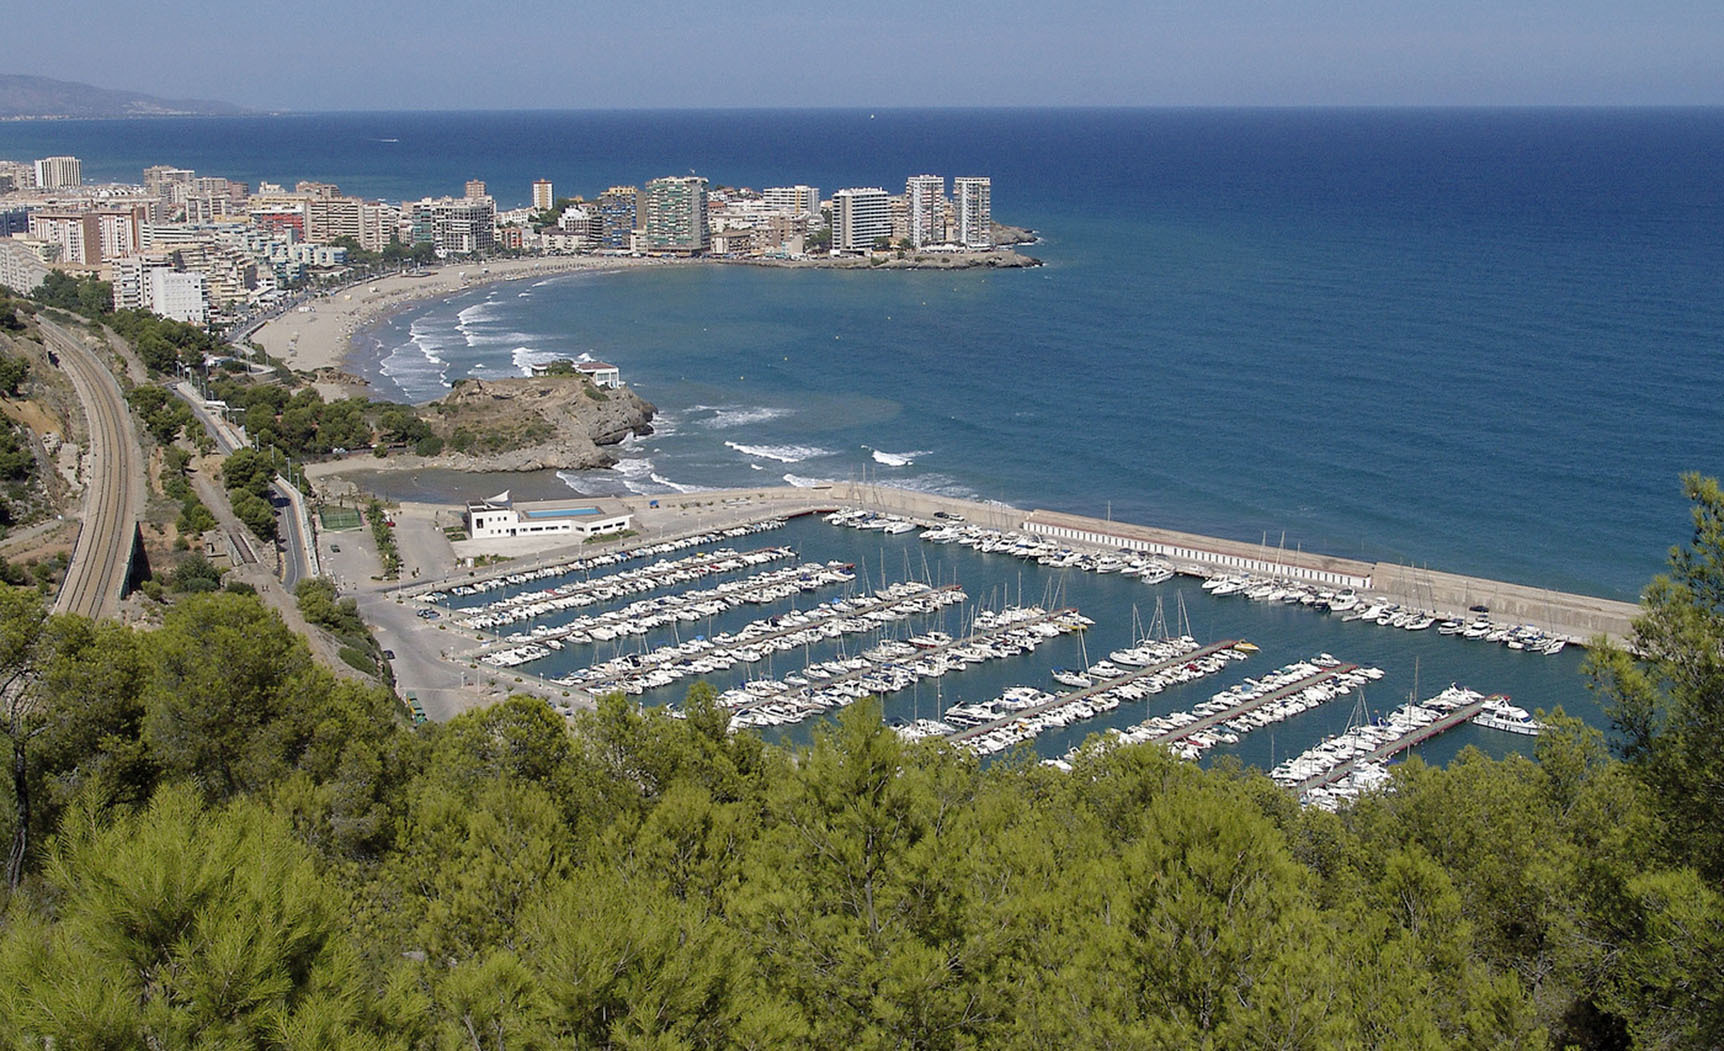 Vista panormica del municipio de Oropesa del Mar.